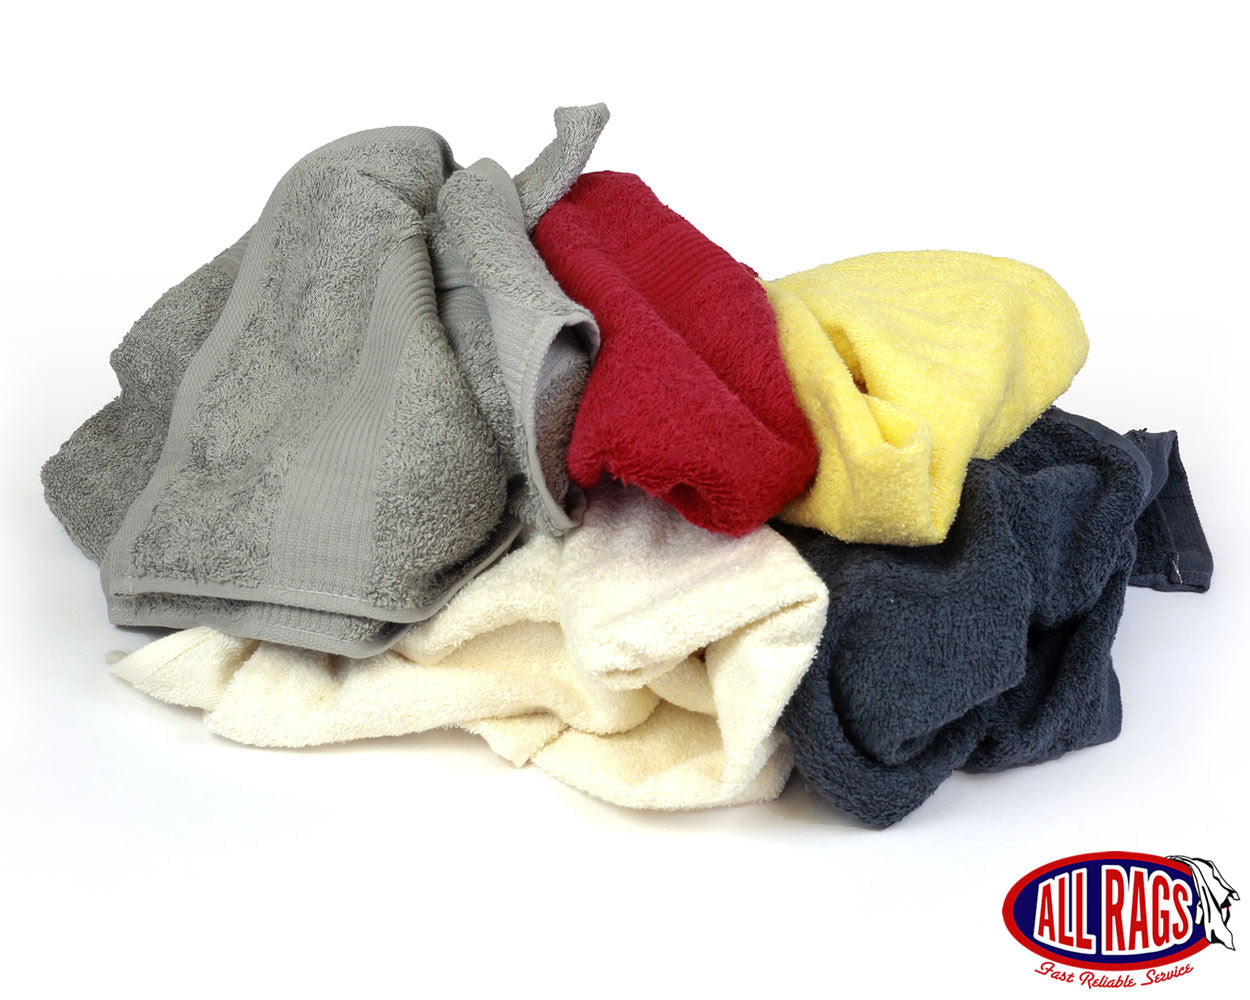 https://allrags.com/cdn/shop/products/N811-New-Colored-Terry-Cloth-Towels_Overruns_1400x.jpg?v=1494453470